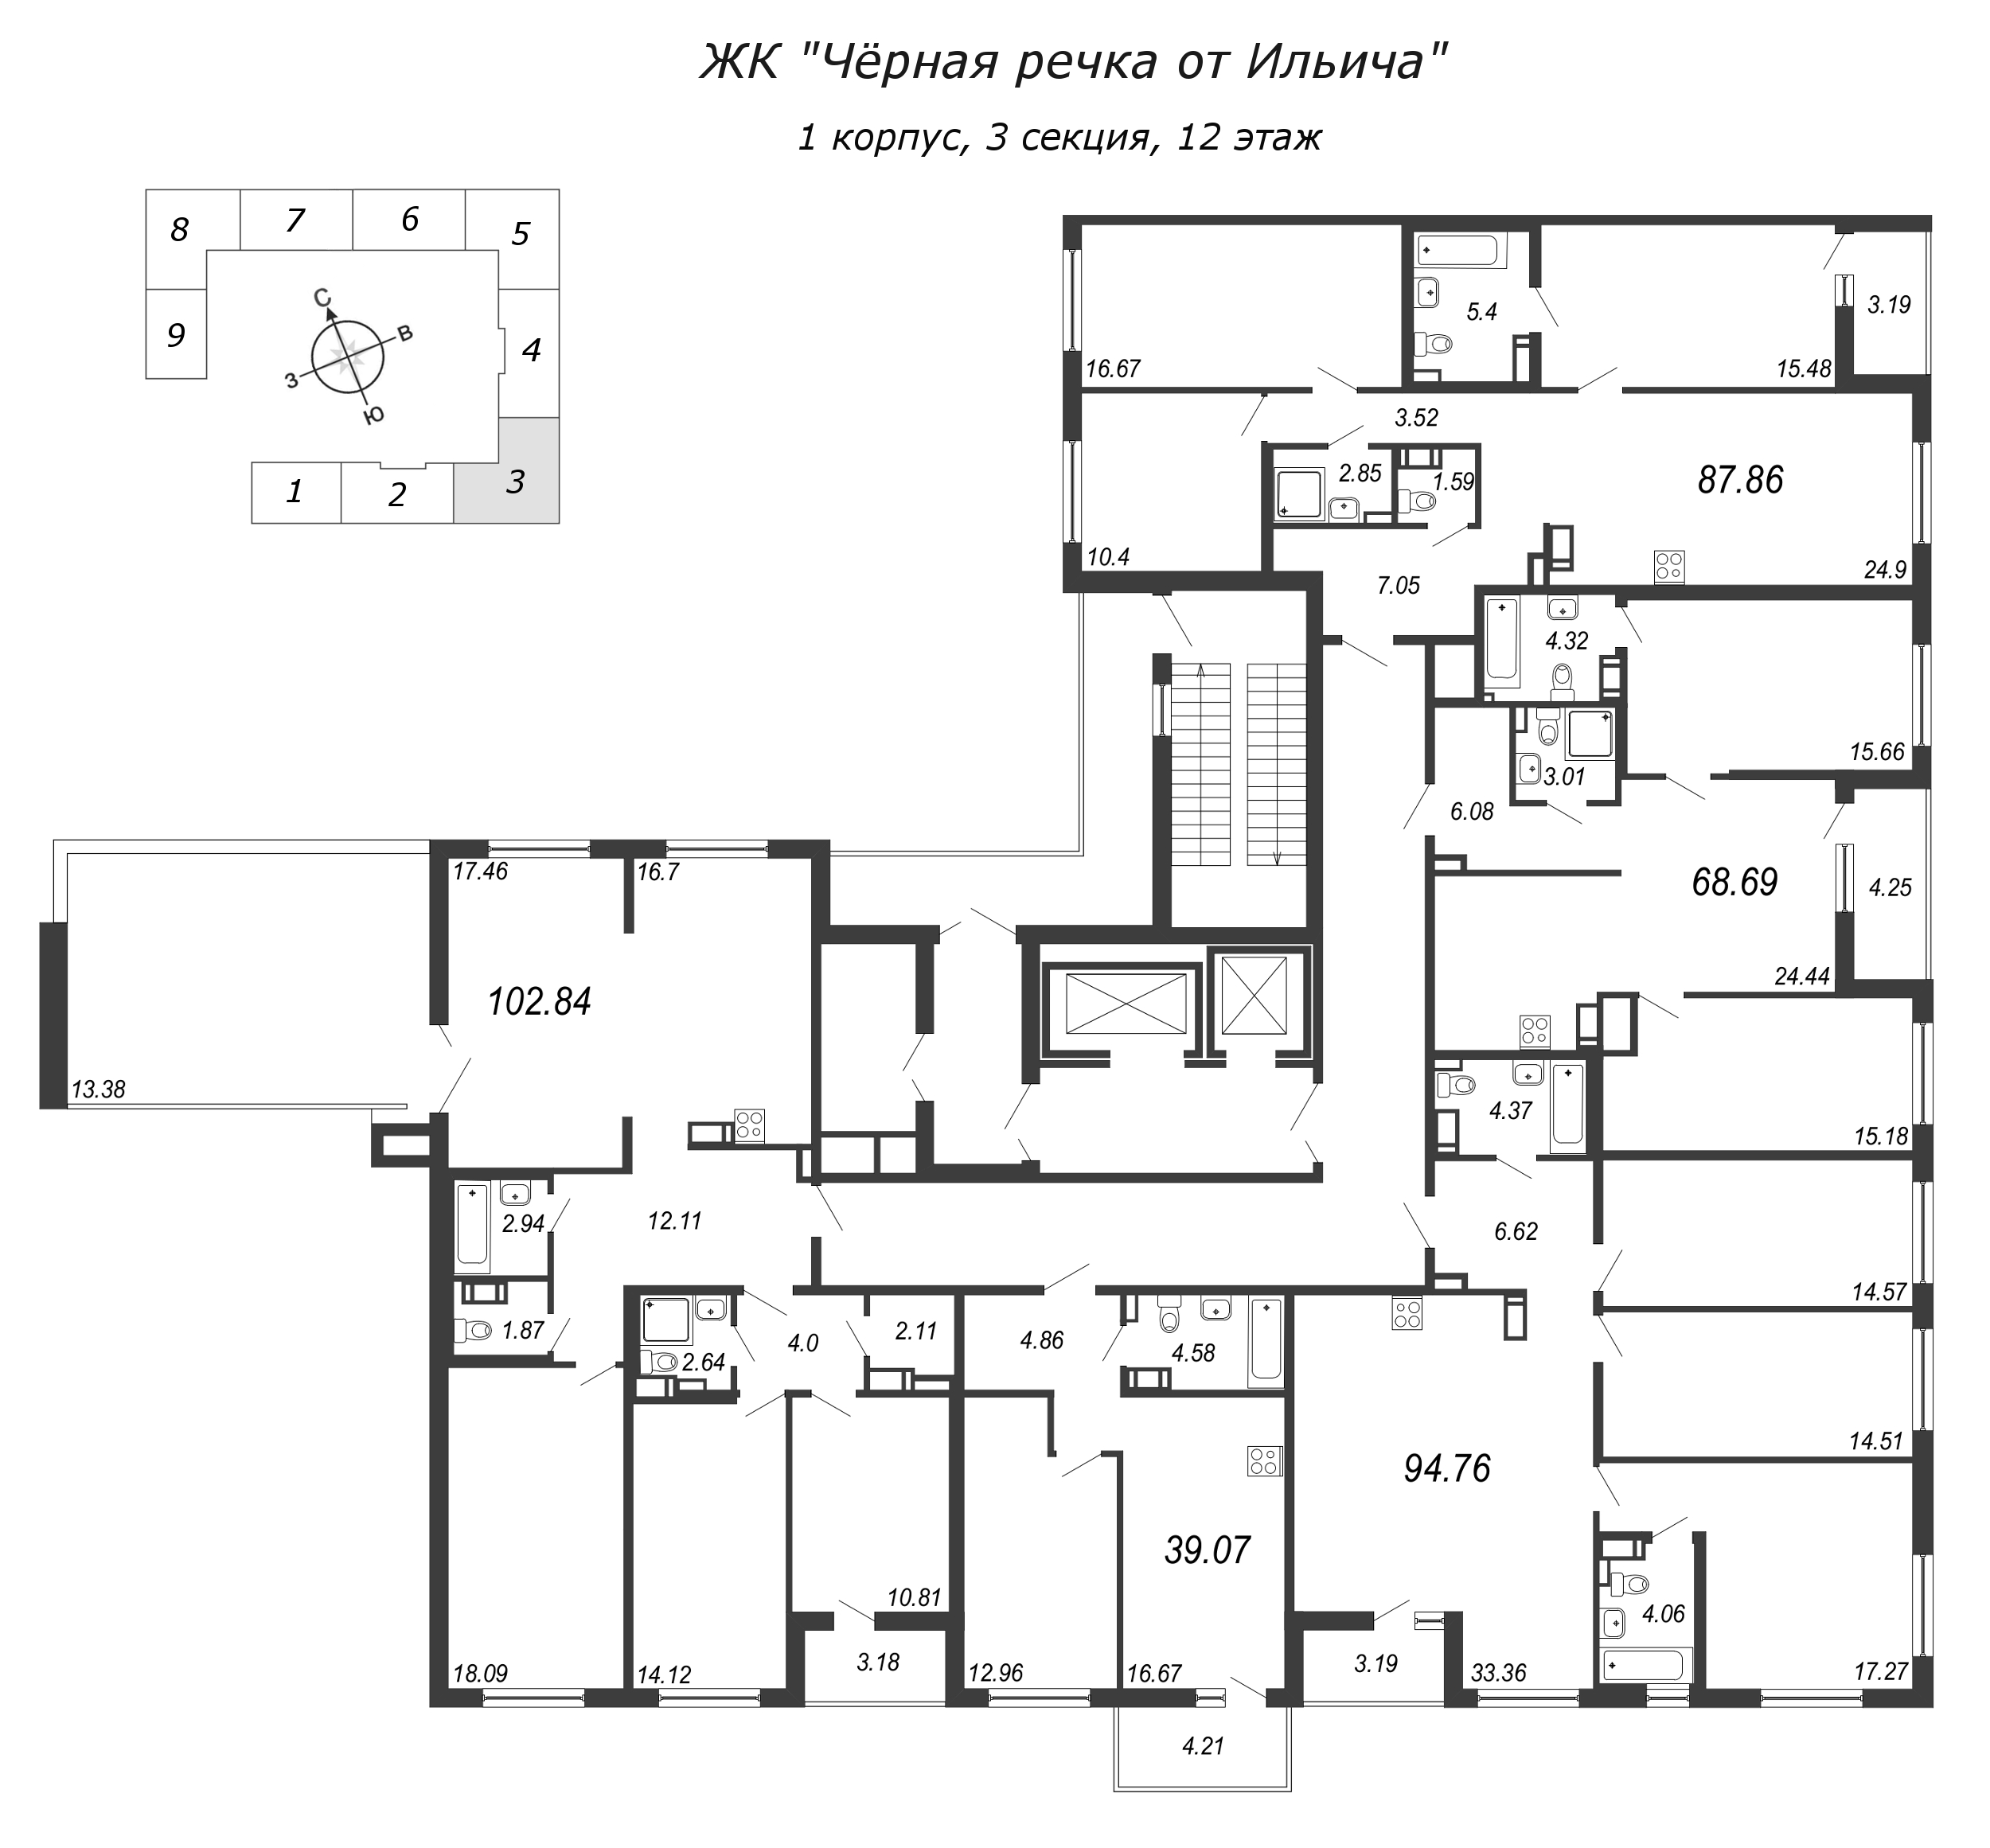 4-комнатная (Евро) квартира, 102.84 м² в ЖК "Чёрная речка" - планировка этажа